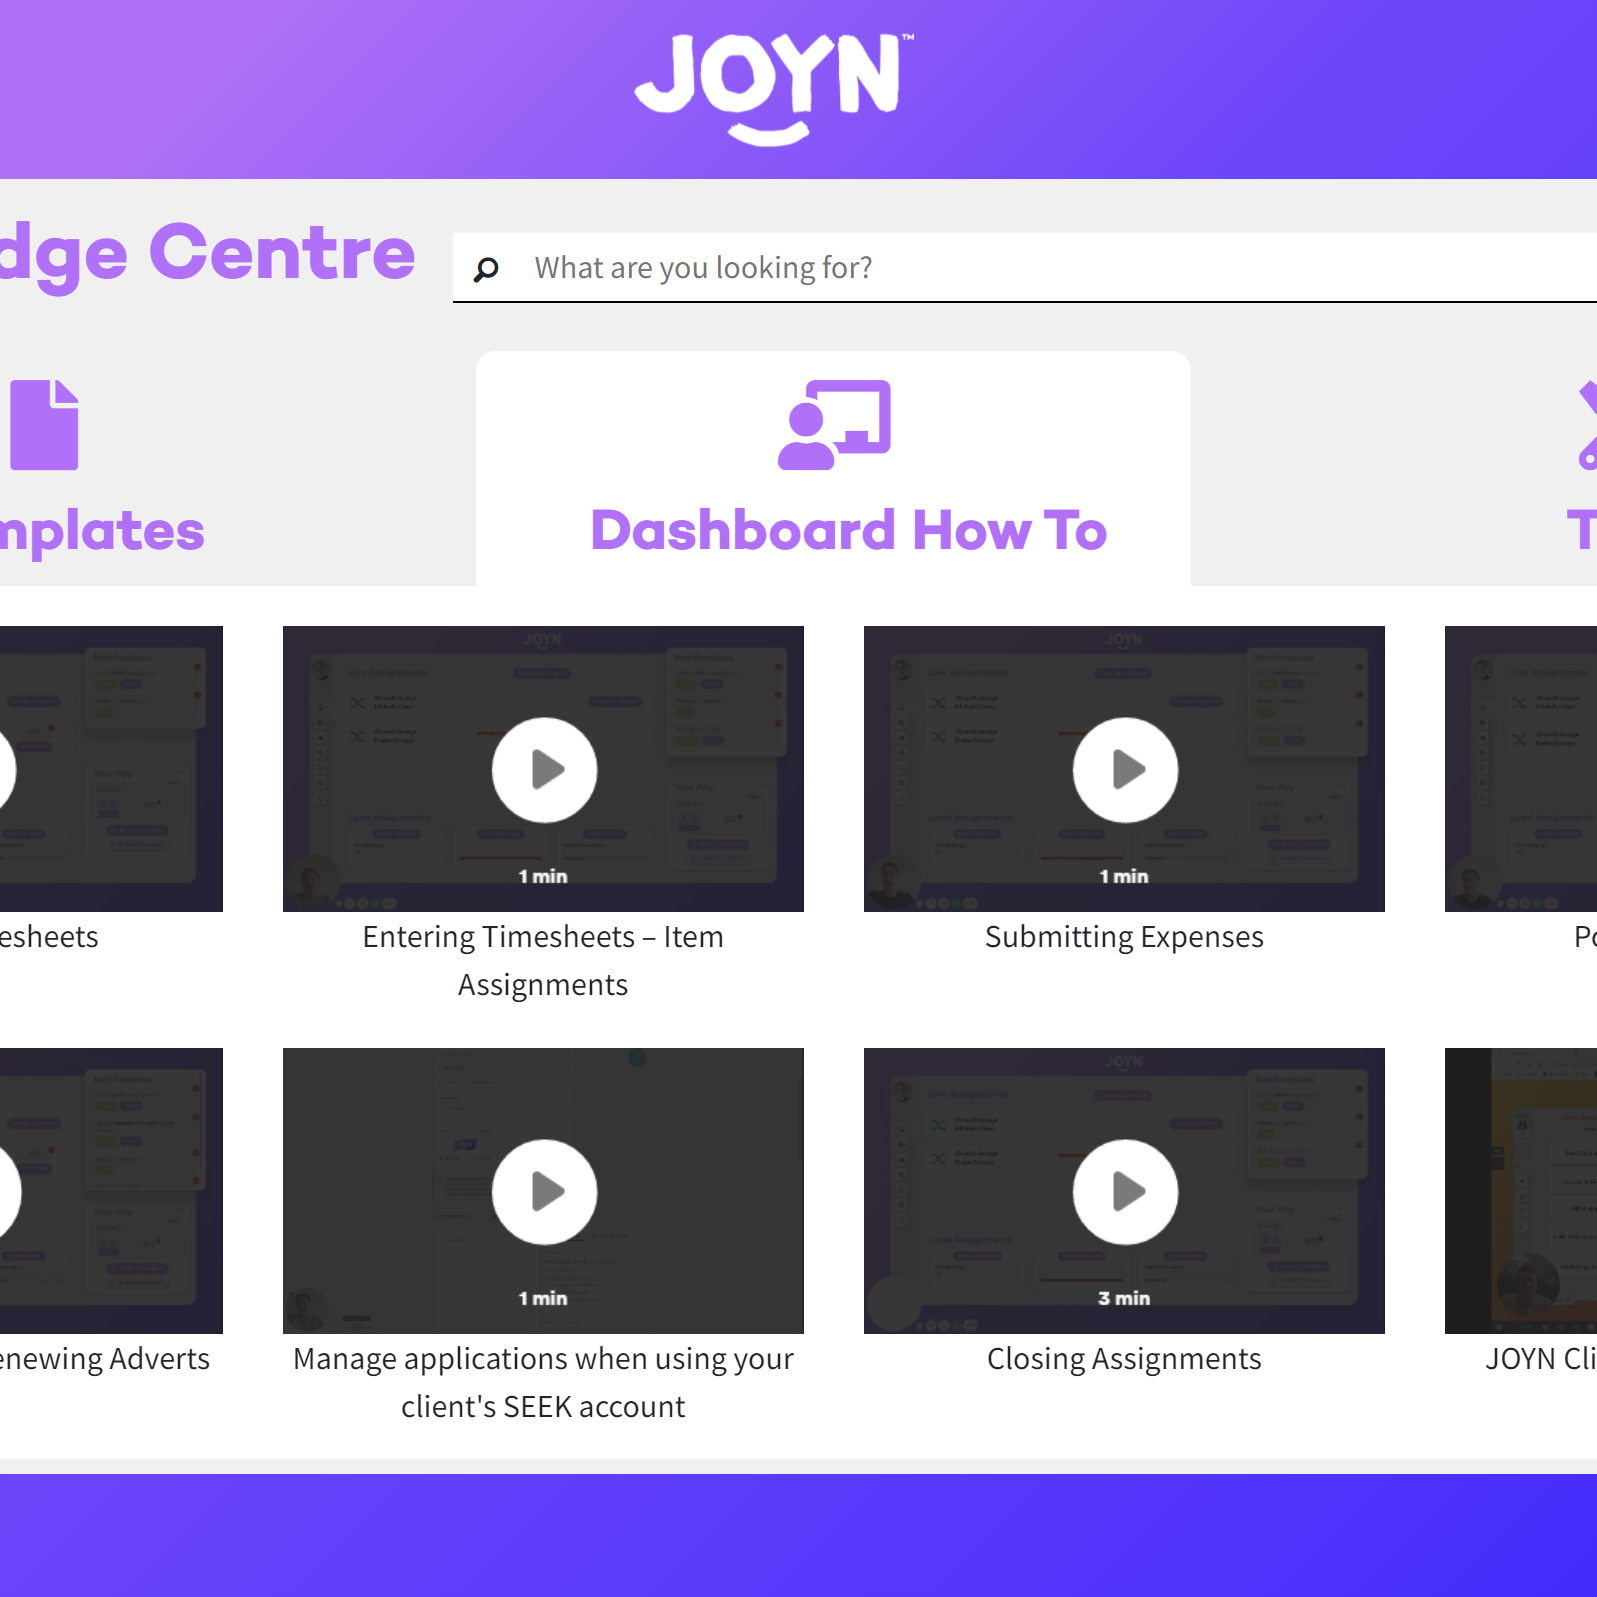 JOYN knowledge center